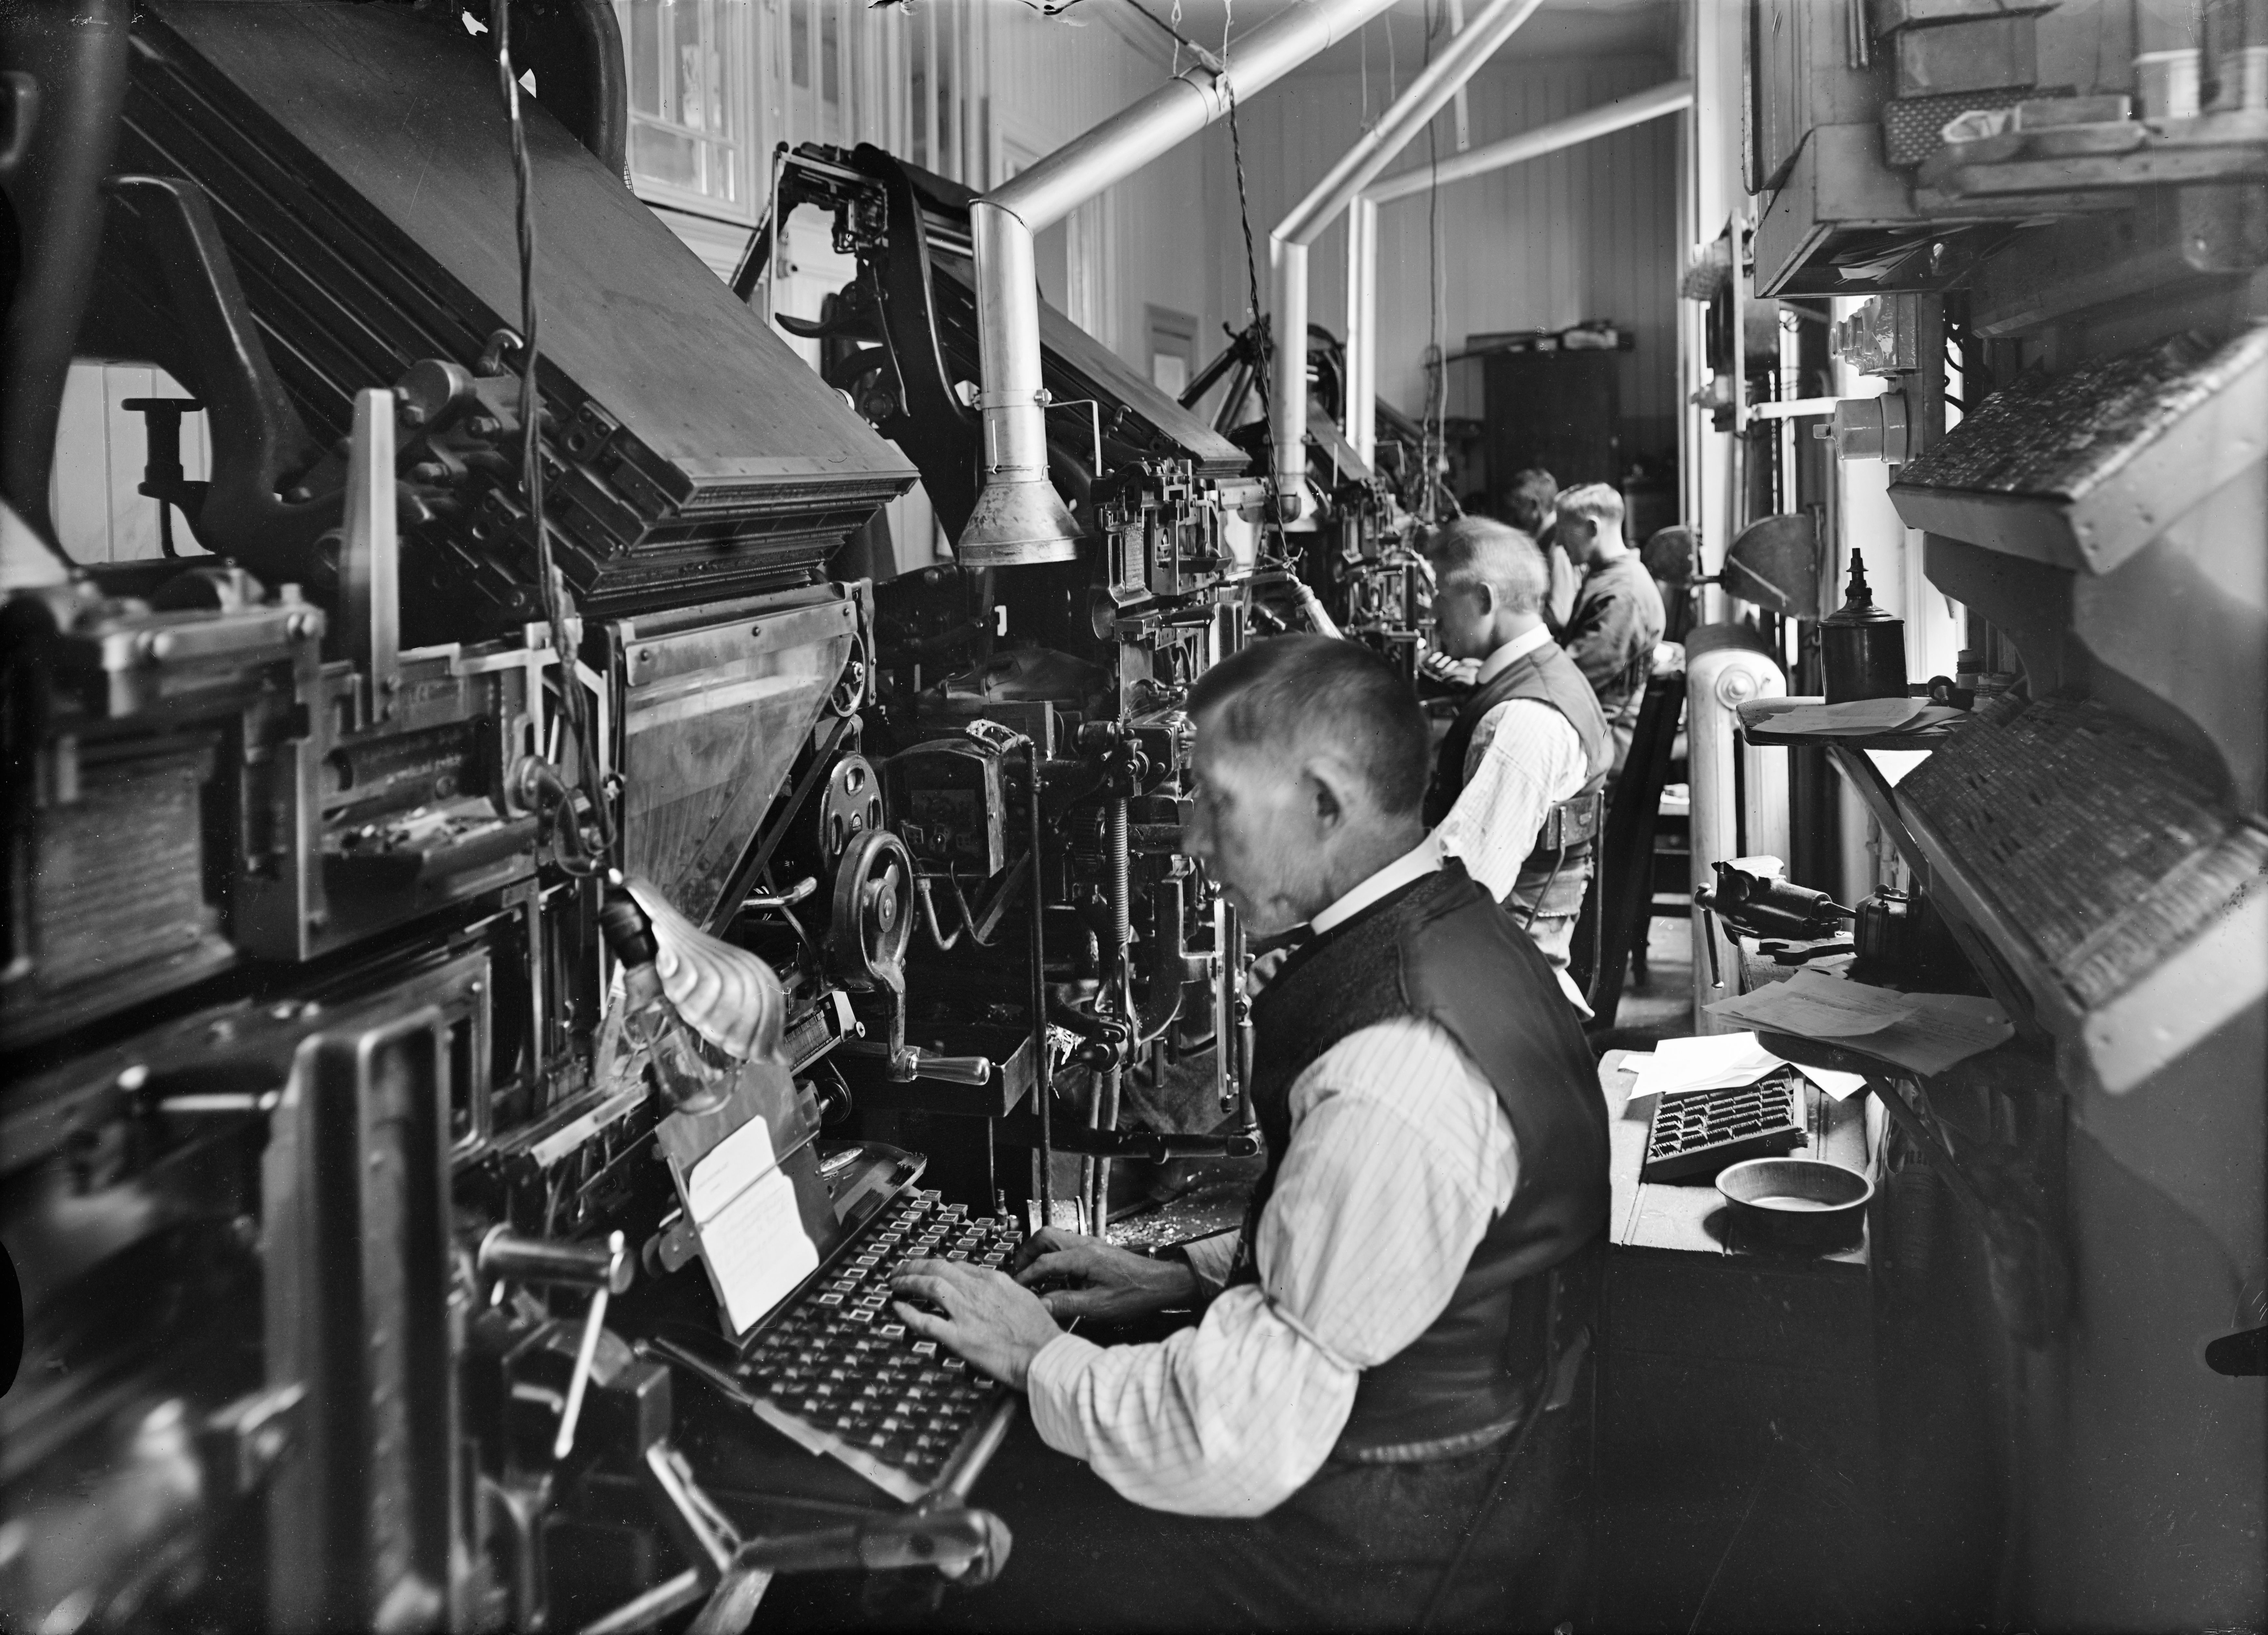 Settemaskiner ble utvikla allerede på 1820-tallet, men kom for alvor i bruk med Linotype-maskina fra 1886. Da fikk typografene mindre befatning med blystøv og farge, og kunne dermed ha hvite skjorter som arbeidsantrekk – «hvitsnipparbeidere». Foto fra Emil Moestue trykkeri i Norbygata 12 i 1938.